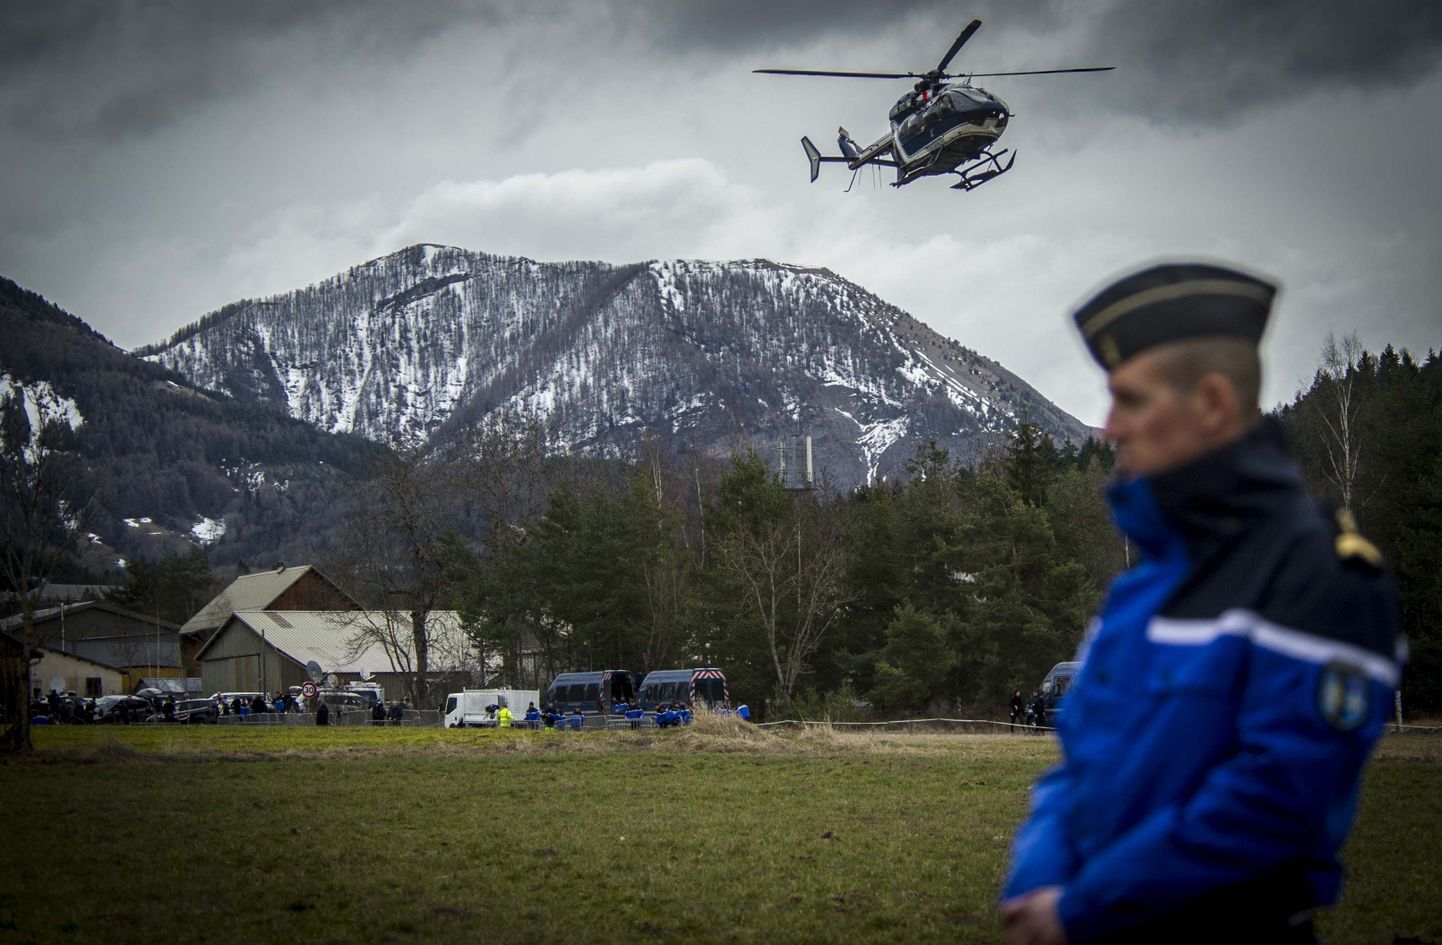 Päästeautod ja politseikopter Prantsuse Alpides, kus viiakse läbi Germanwingis lennukatastroofi ohvrite otsinguid.